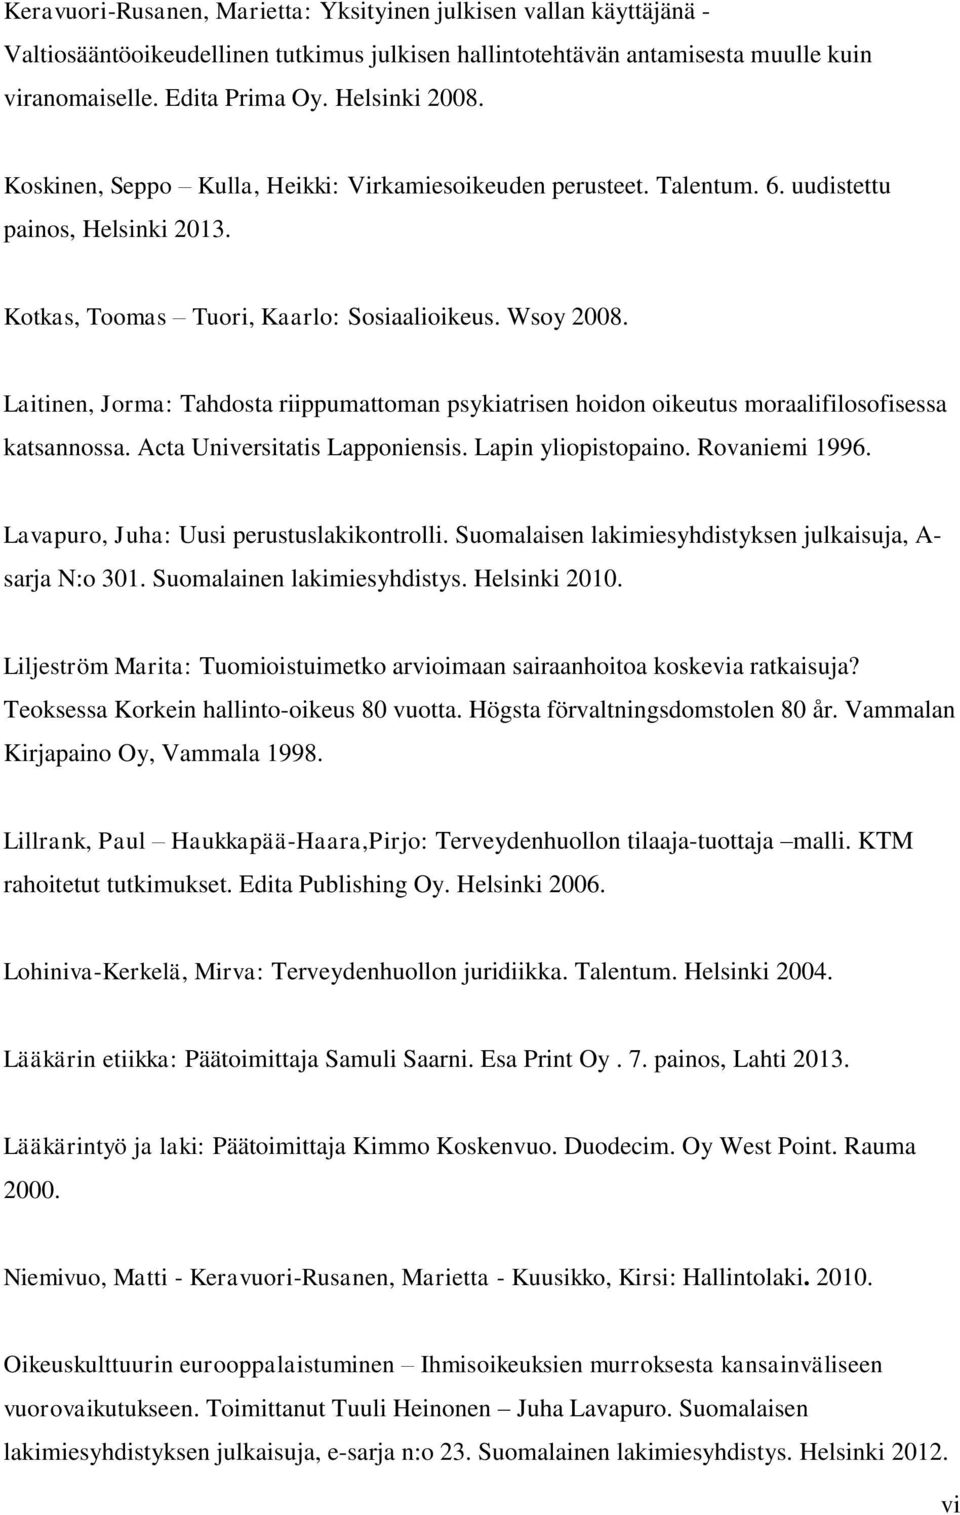 Laitinen, Jorma: Tahdosta riippumattoman psykiatrisen hoidon oikeutus moraalifilosofisessa katsannossa. Acta Universitatis Lapponiensis. Lapin yliopistopaino. Rovaniemi 1996.